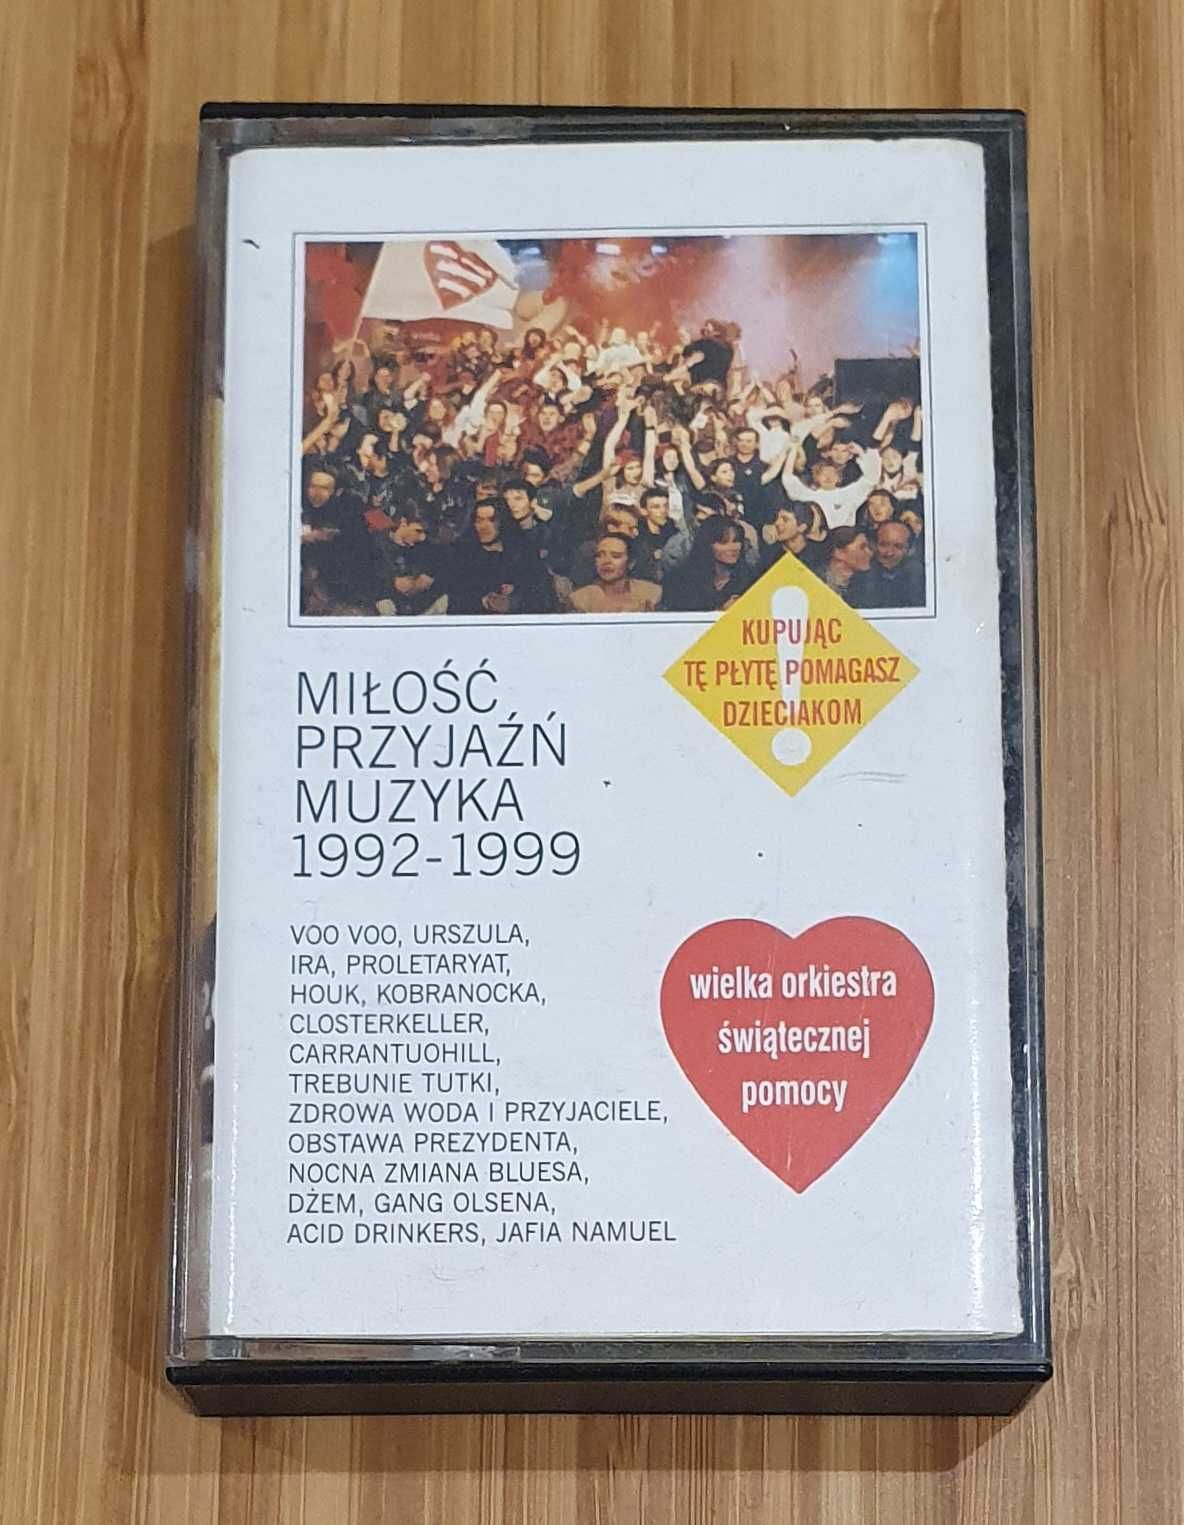 Miłość, Muzyka, Przyjaźń 1992 - 1999, WOŚP / Dżem, Voo Voo, Kobranocka